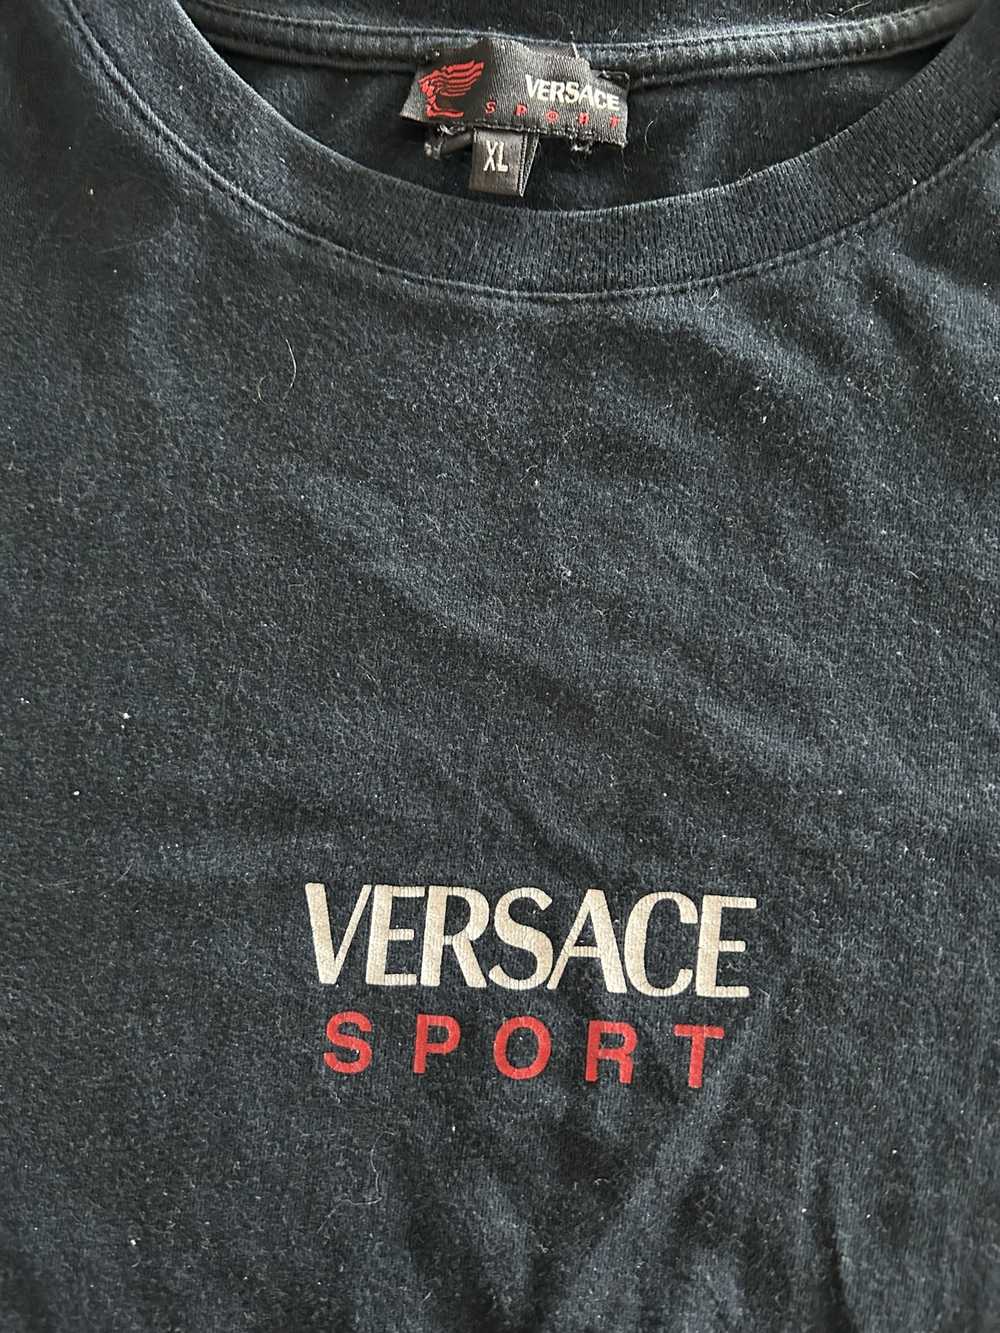 Versace 00s Versace Sport Tee - image 3